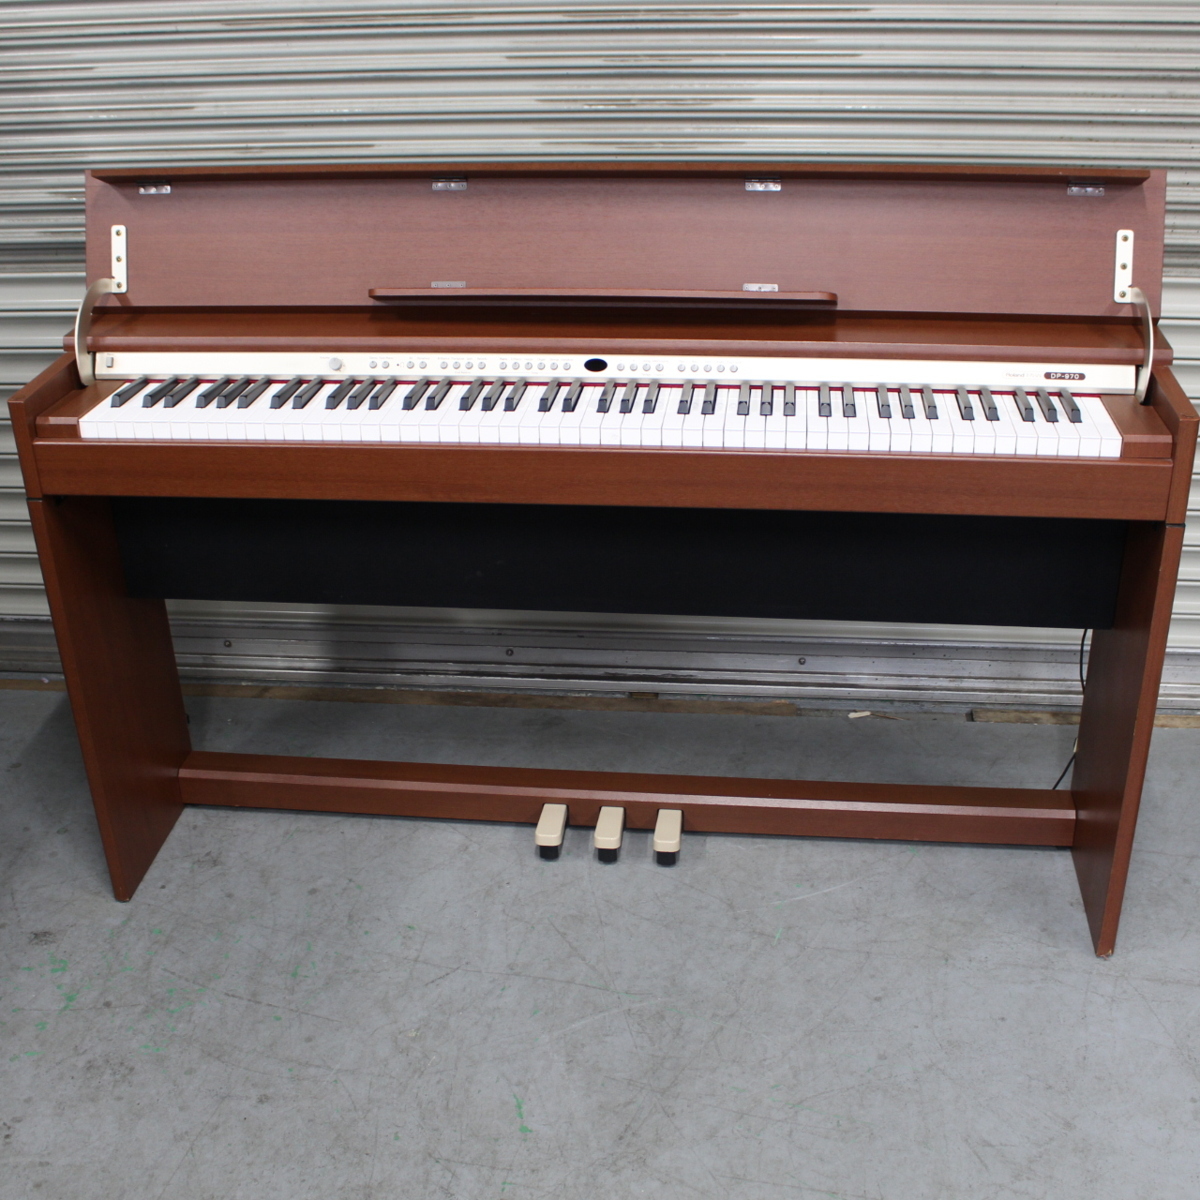 ローランド デジタルピアノ DP-970 88鍵盤 2006年製